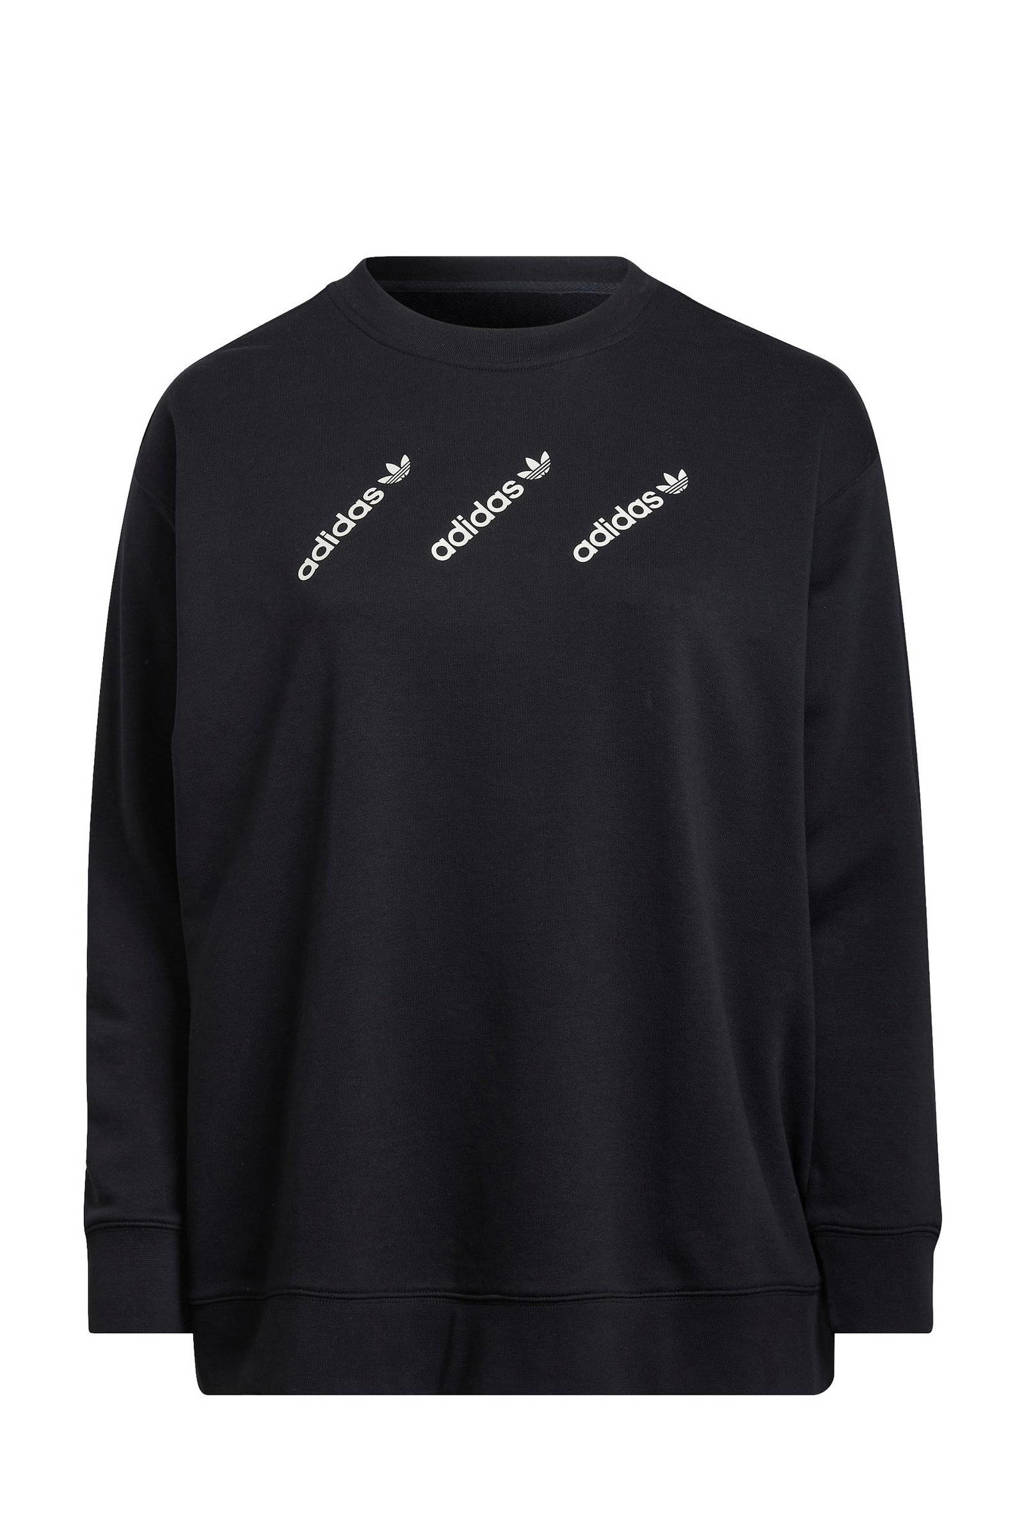 Zwarte dames adidas Originals Plus Size sweater van katoen met logo dessin, lange mouwen, ronde hals en geribde boorden